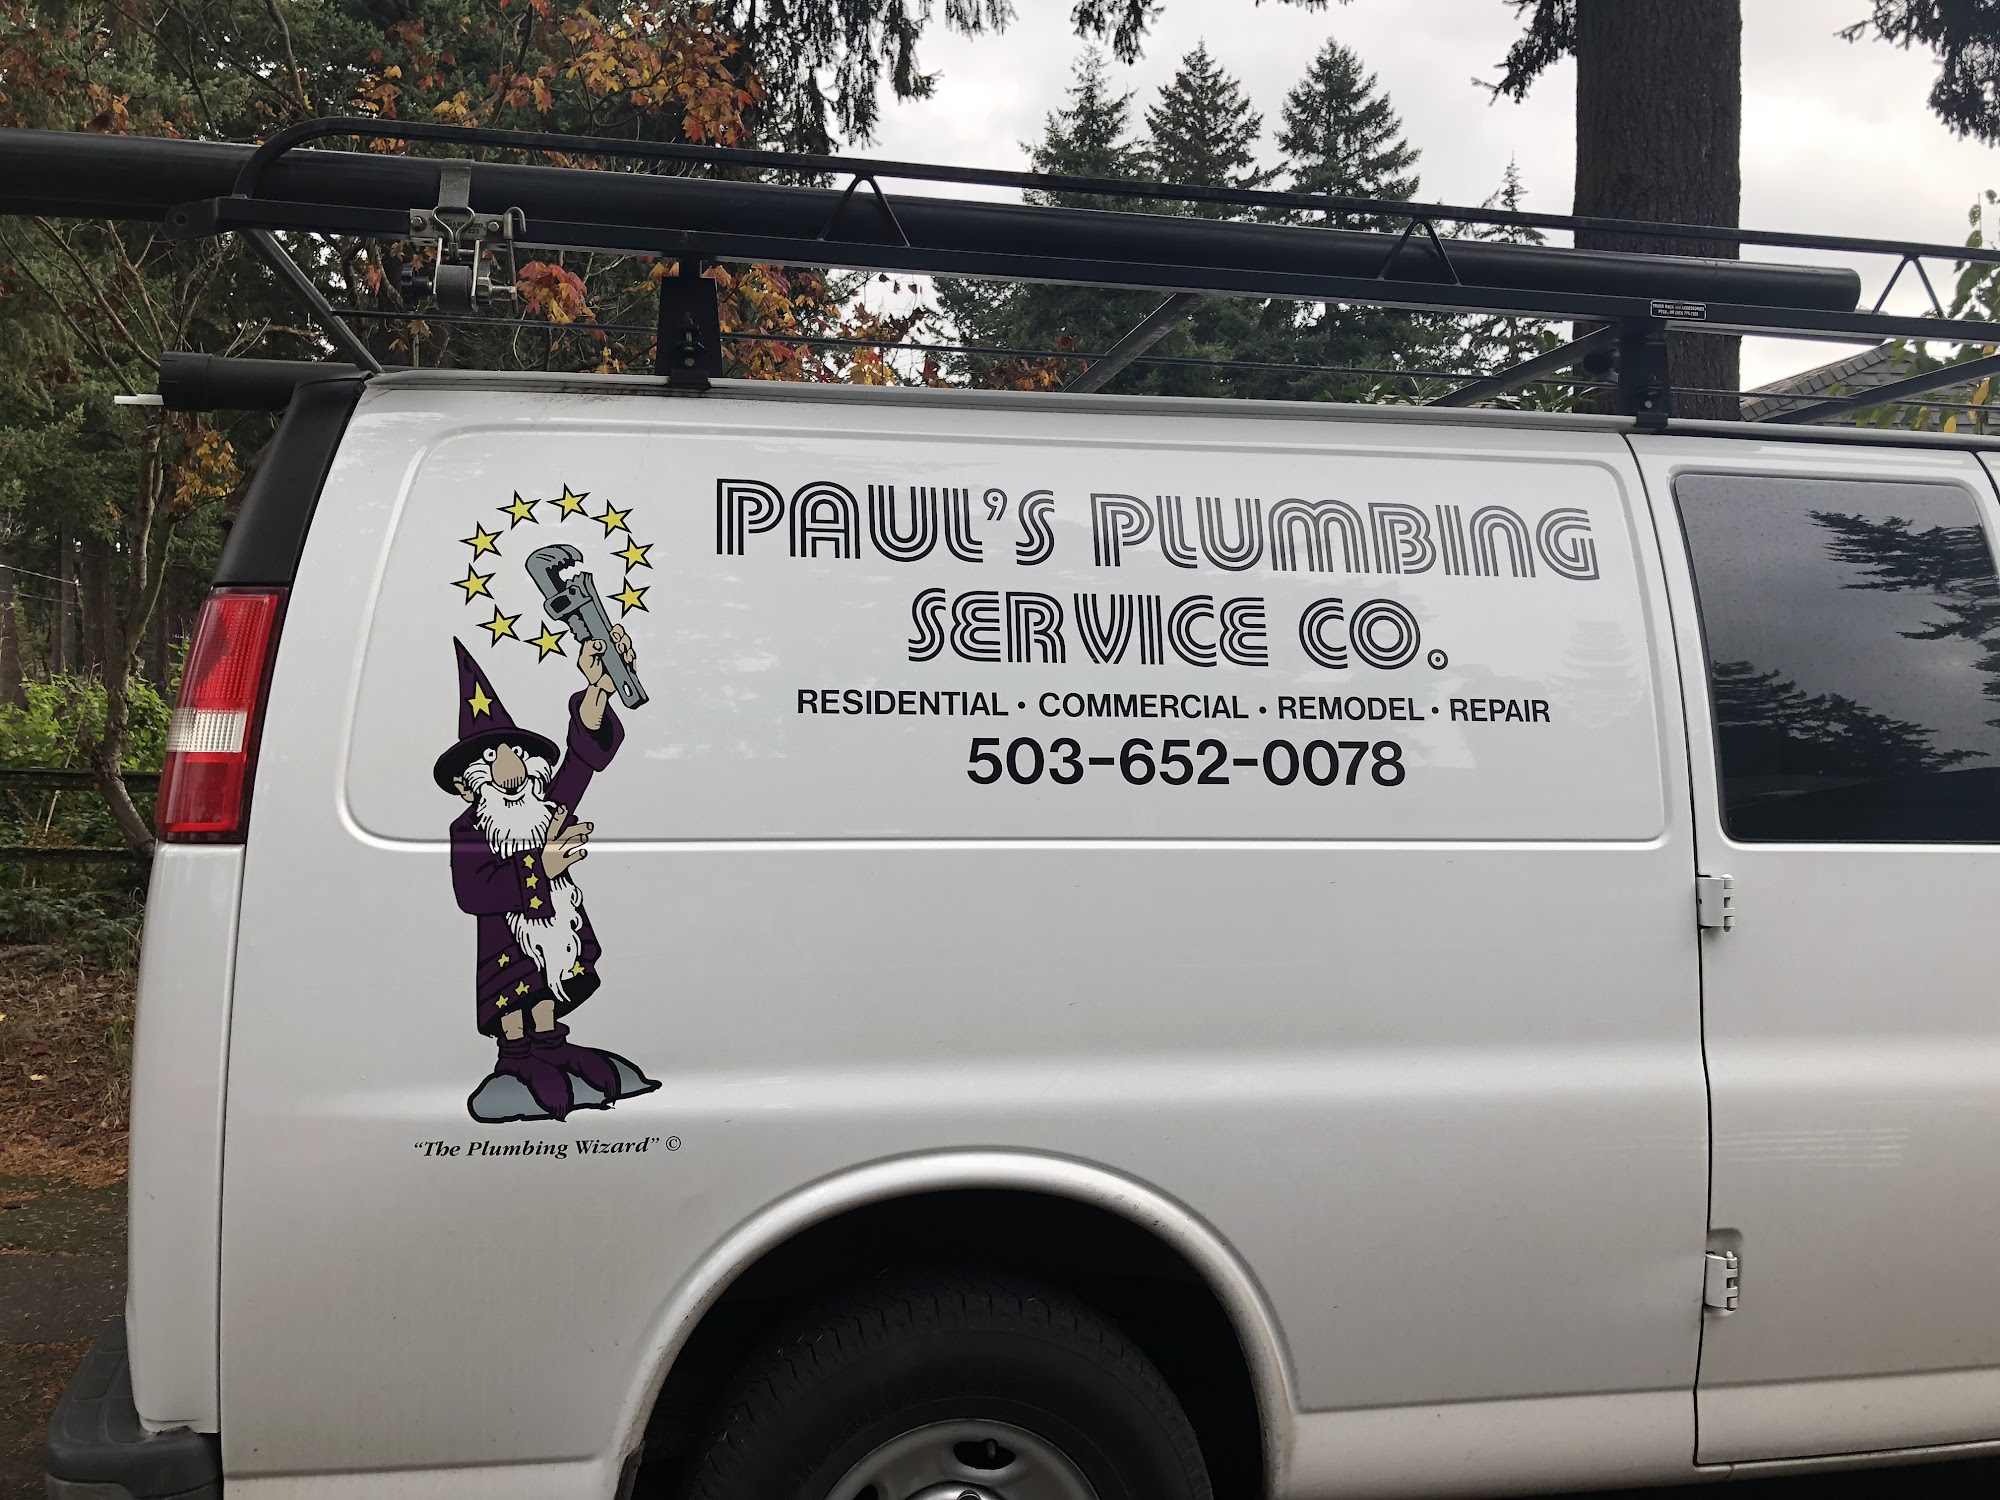 Paul's Plumbing Co